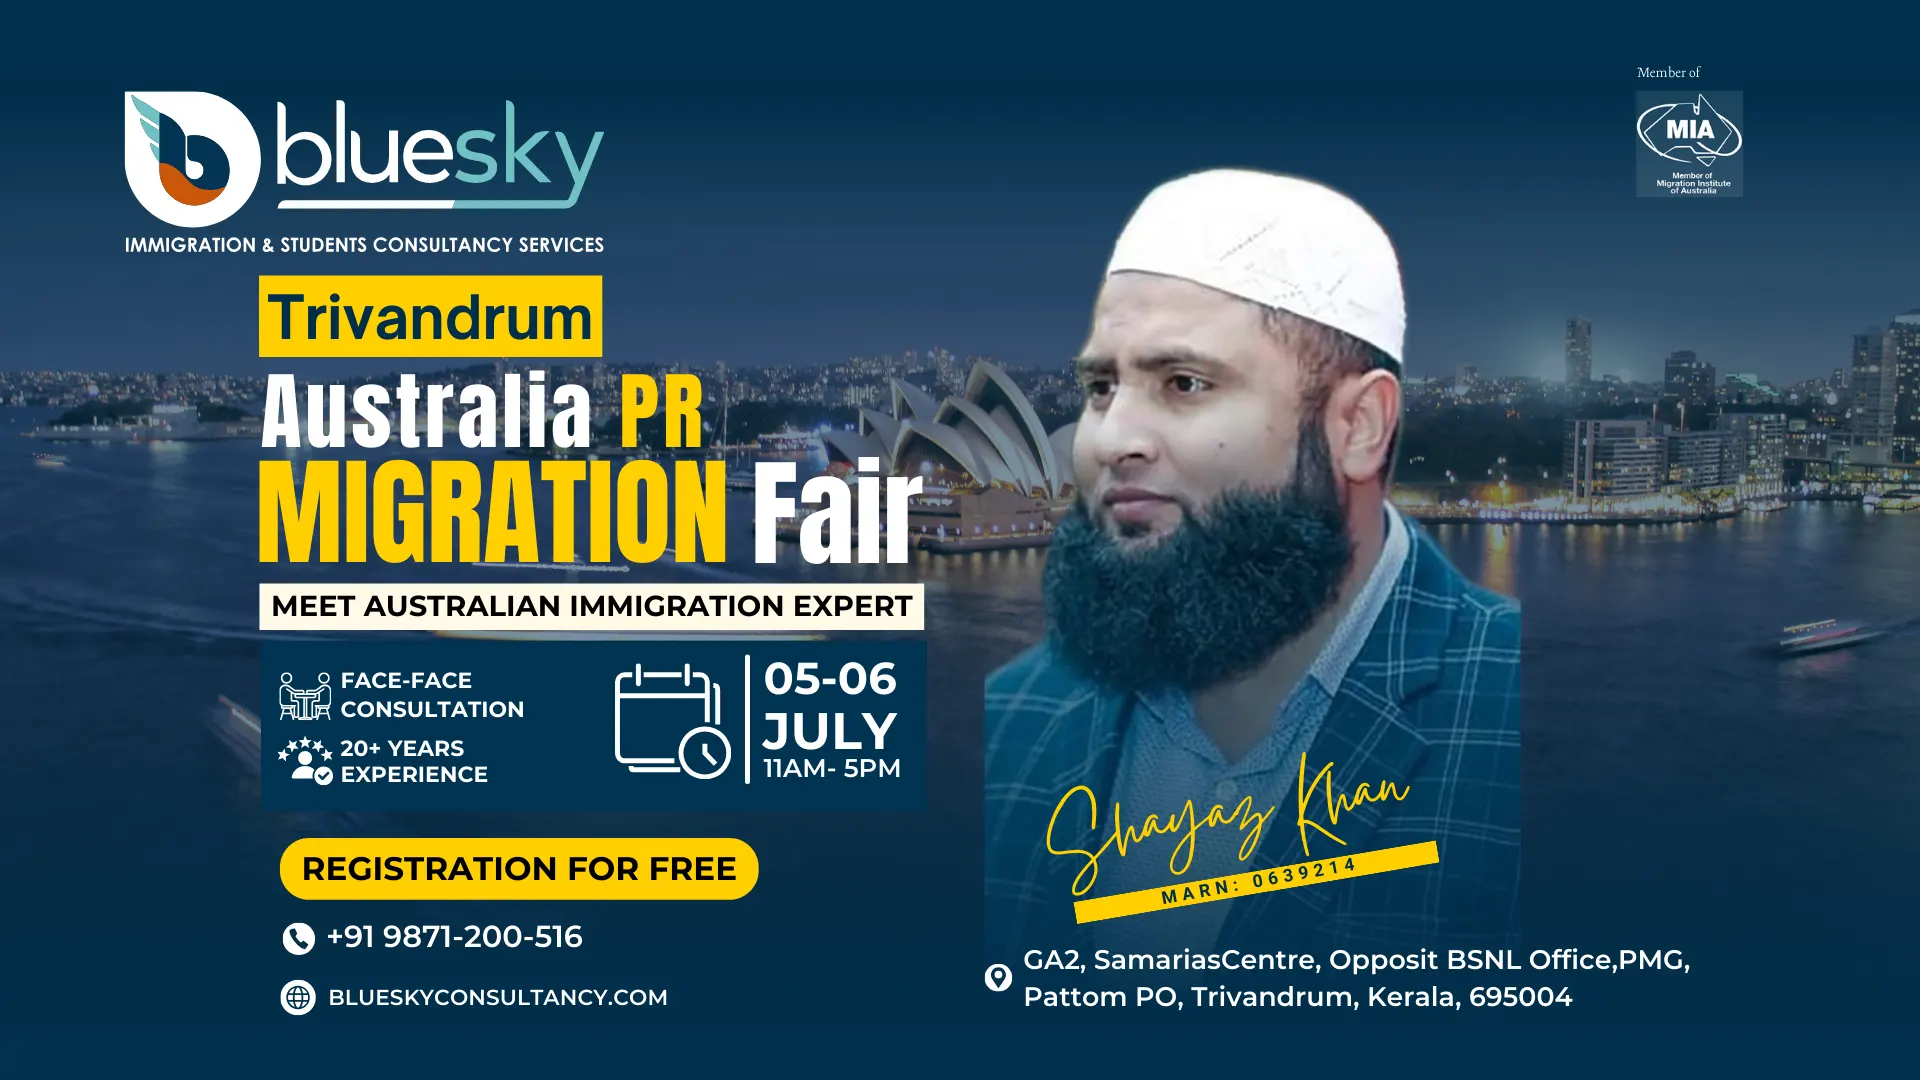 Trivandrum Australia PR Migration Fair